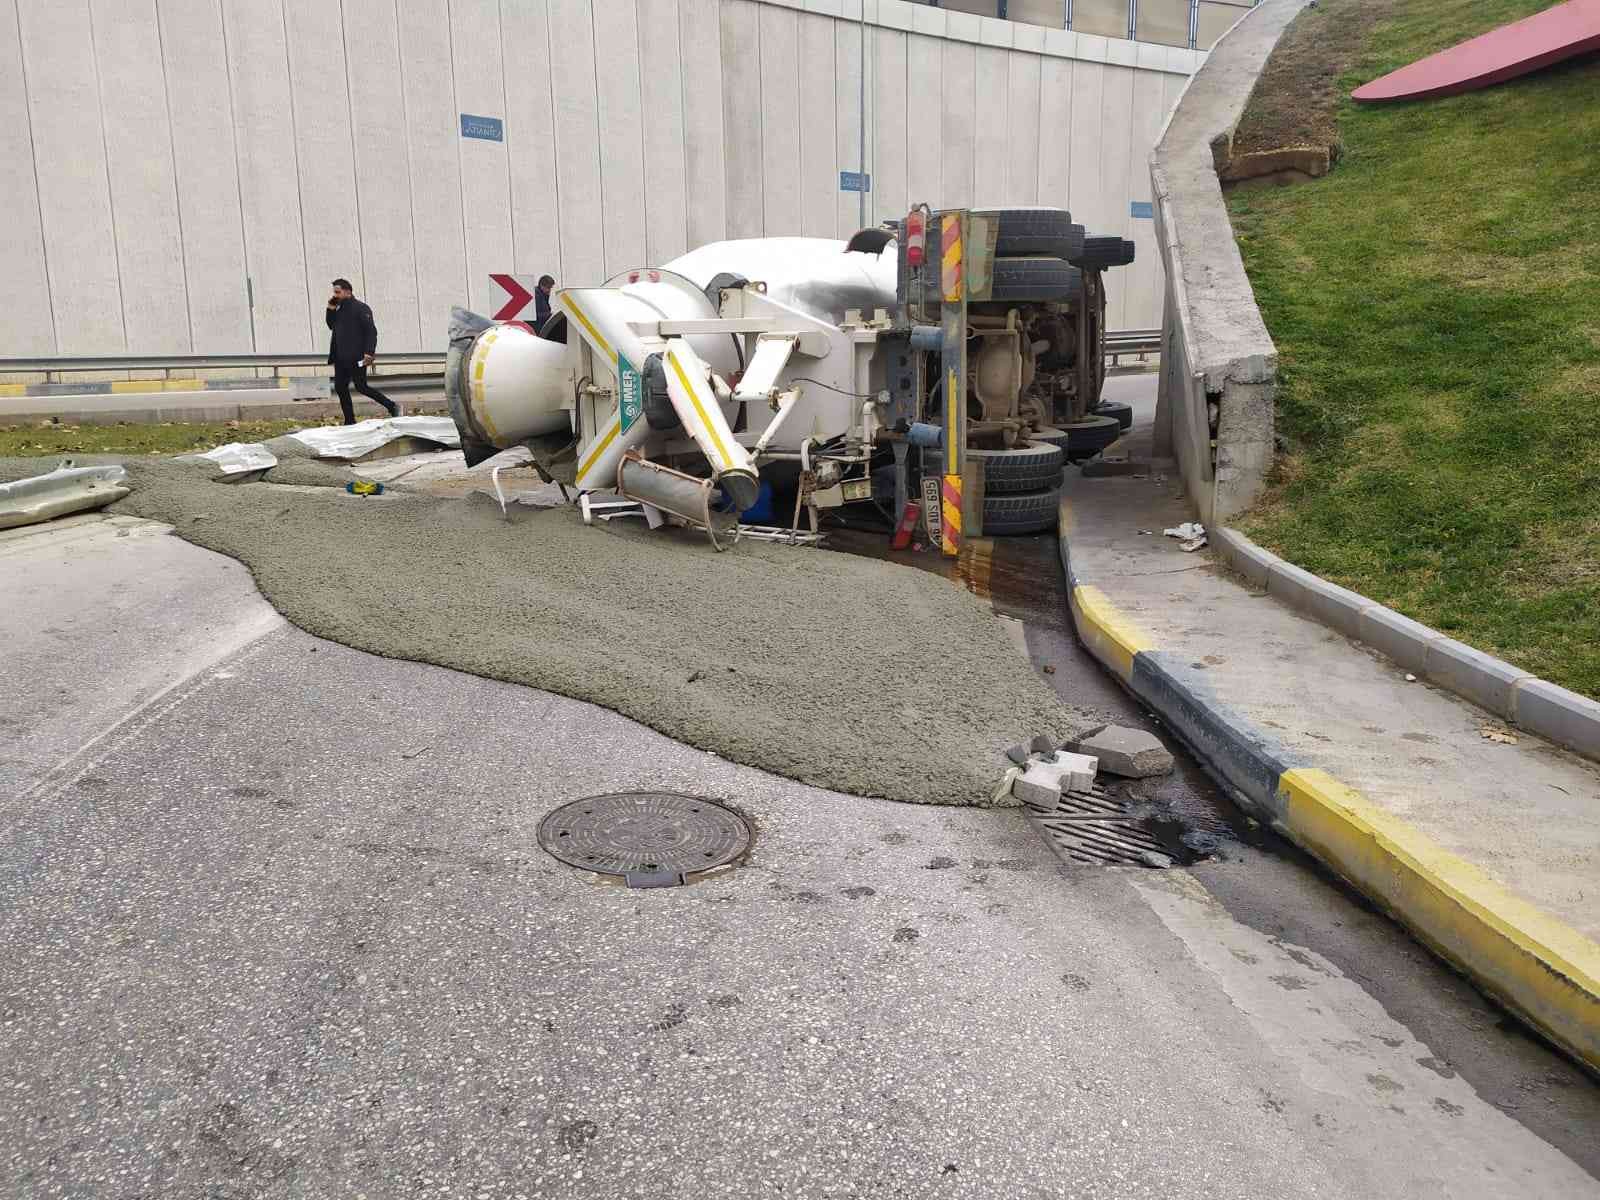 Virajı alamayan beton mikseri devrildi, içerisindeki sıvı beton yola döküldü #gaziantep